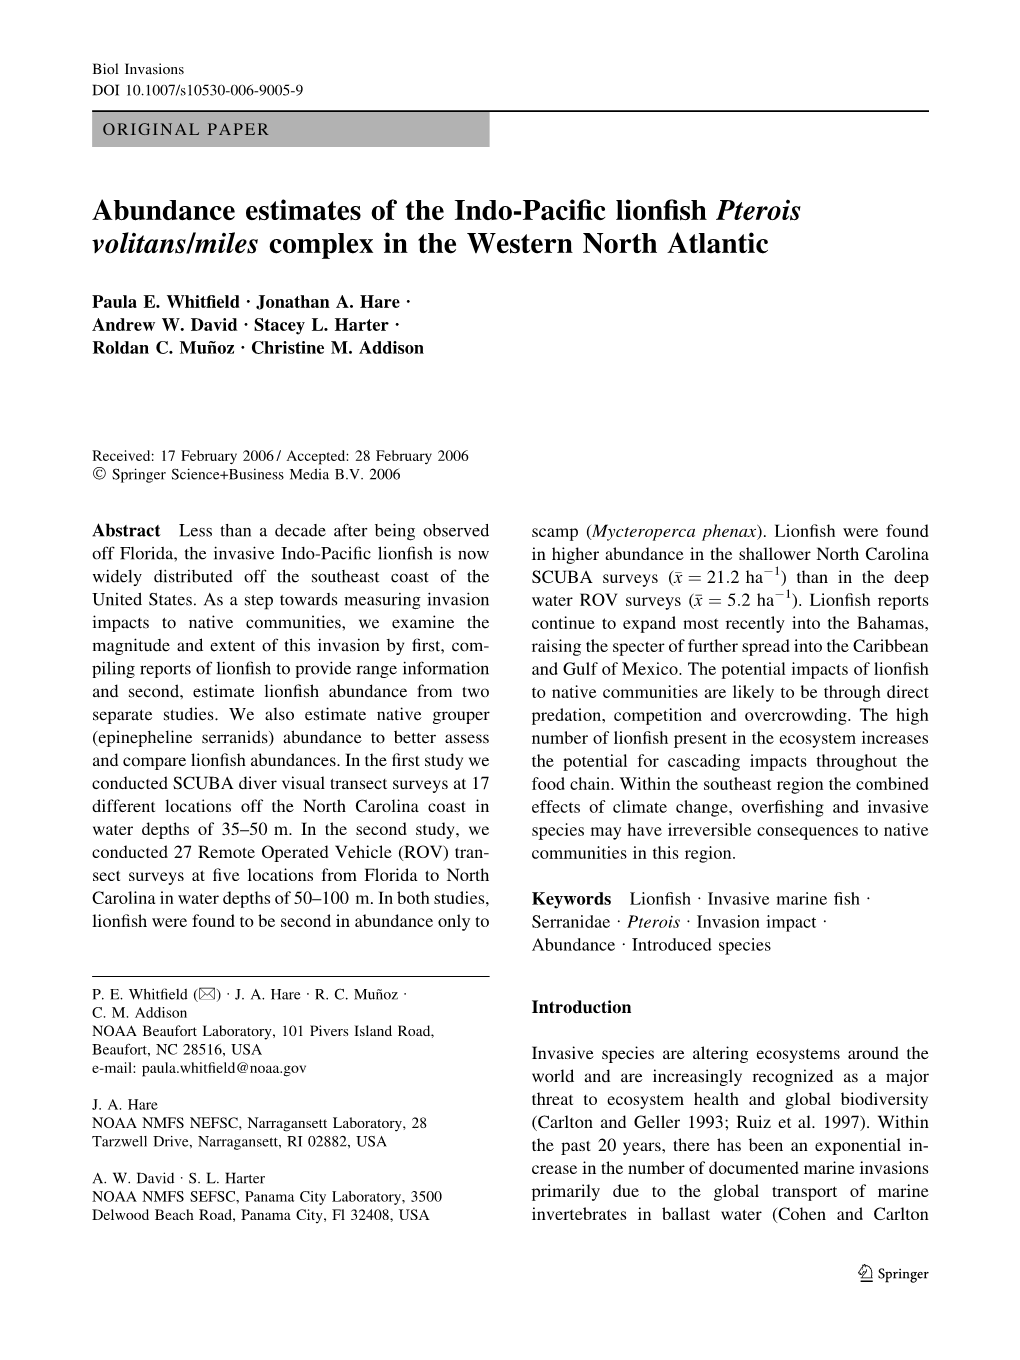 Abundance Estimates of the Indo-Pacific Lionfish Pterois Volitans